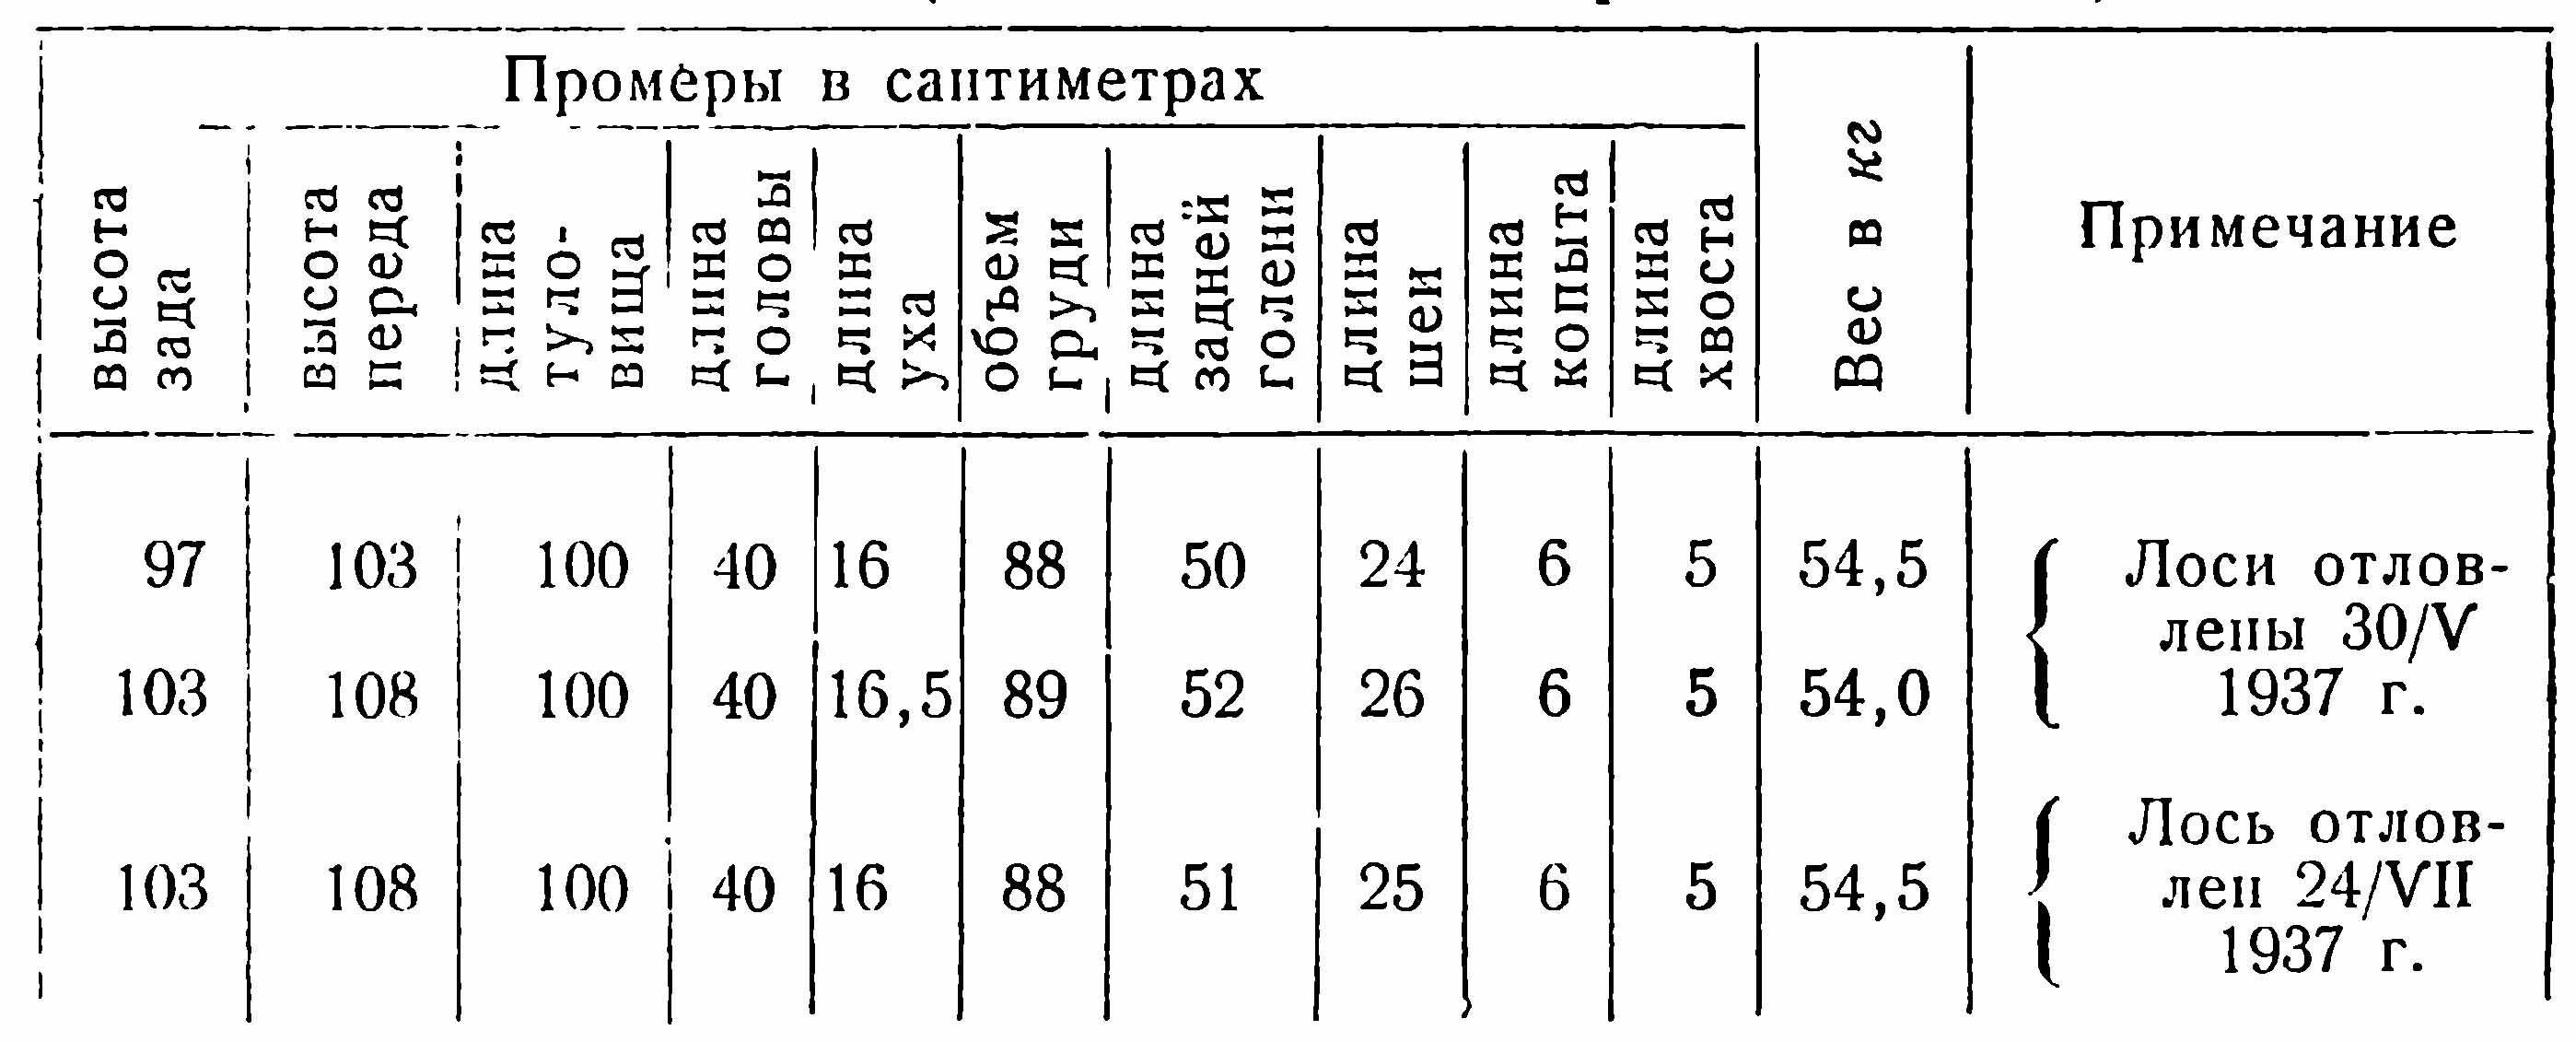 Таблица № 3. Промеры и вес молодняка лосей в Белорусском государственном заповеднике (по данным Маргайлика И. А.).